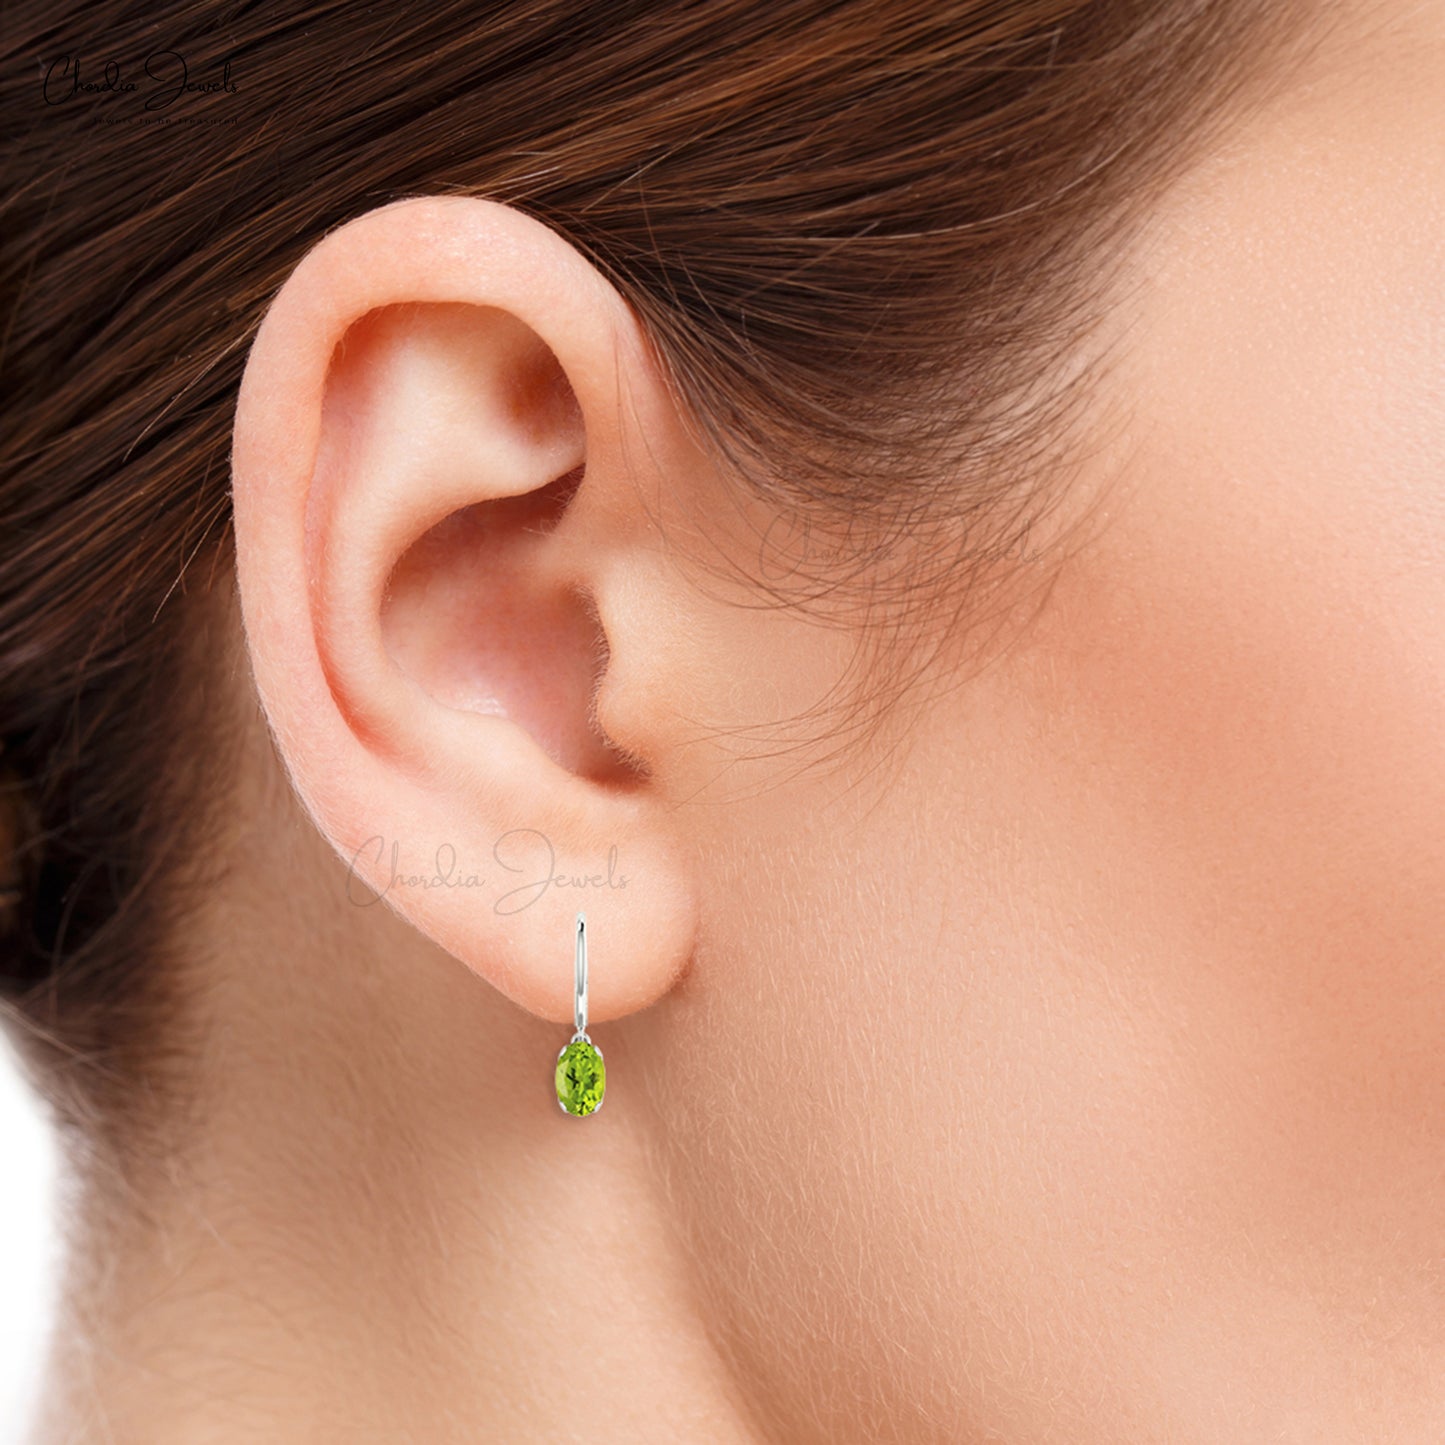 Dainty 1.1ct Peridot Gemstone Dangle Earrings 14k Gold August Birthstone Leverback Earring